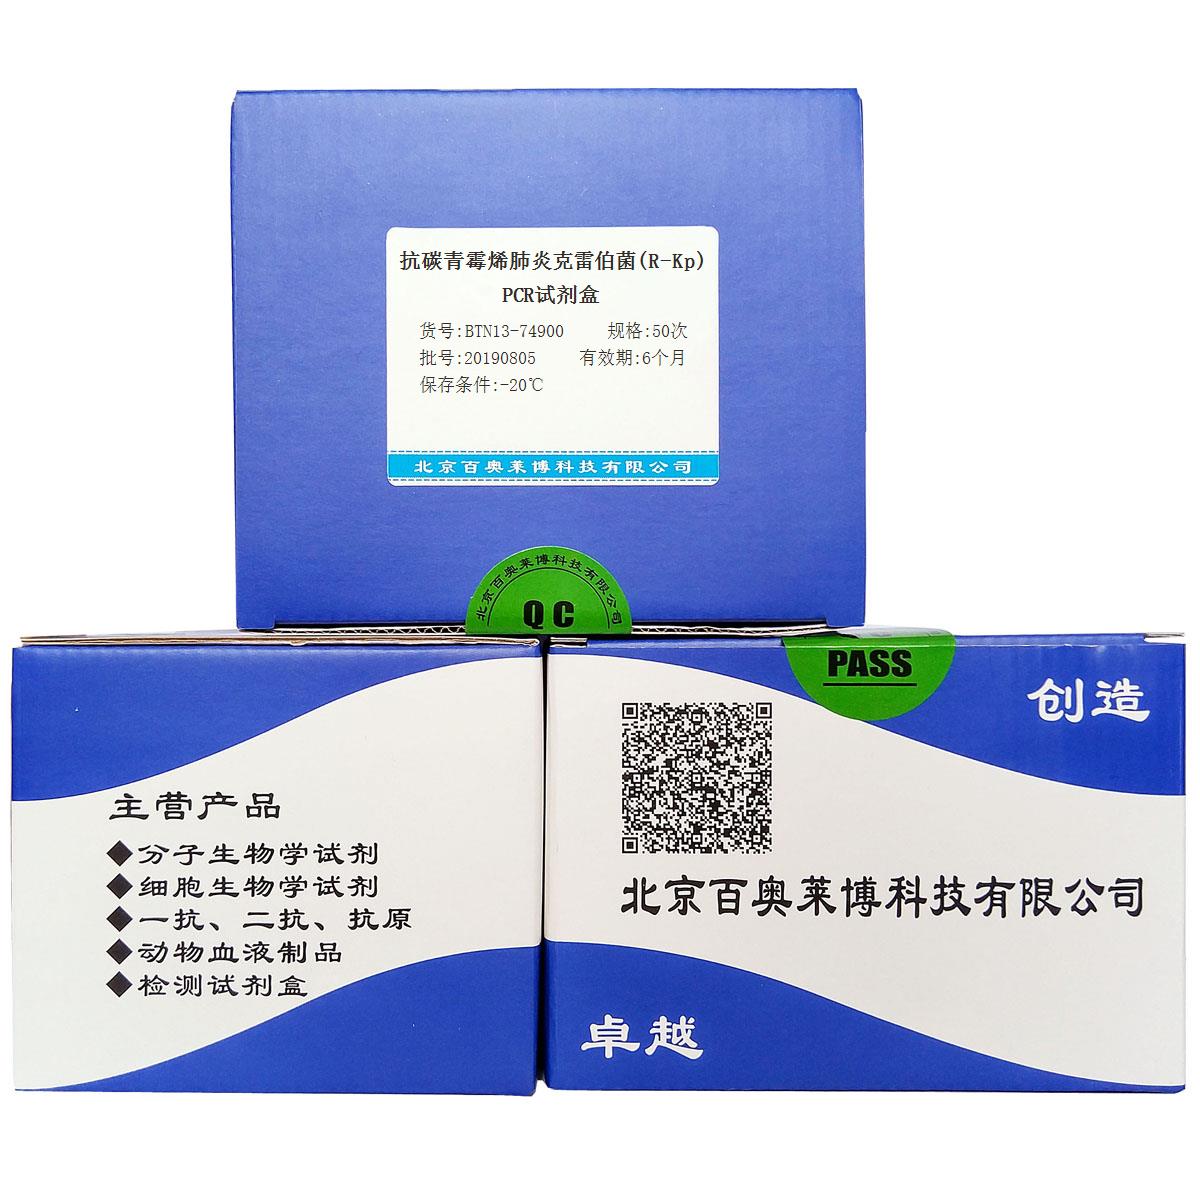 抗碳青霉烯肺炎克雷伯菌(R-Kp)PCR试剂盒